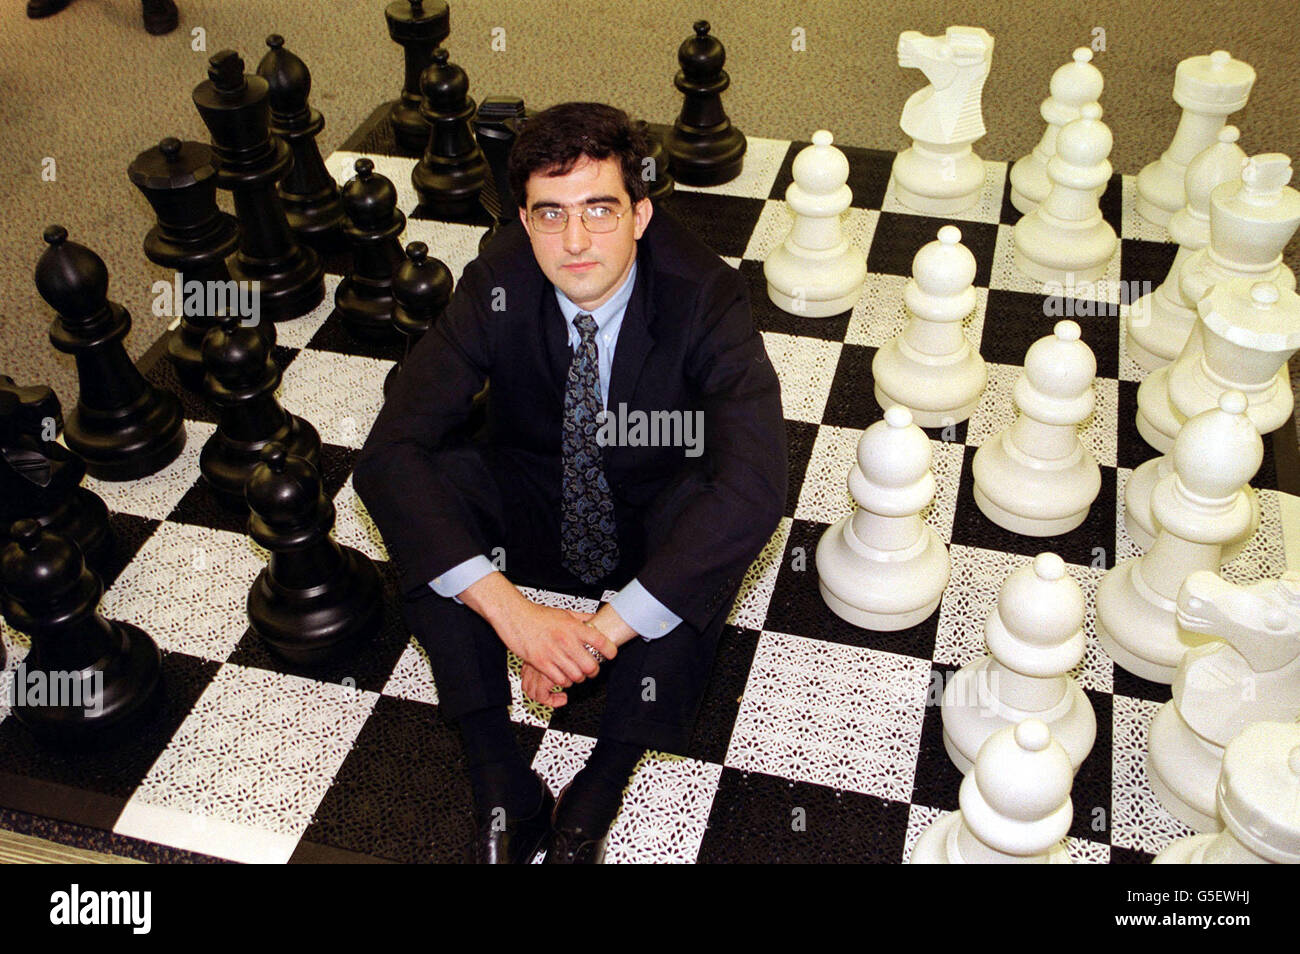 Le champion du monde d'échecs Vladimir Kramnik au lancement du tournoi d' échecs homme contre machine à Londres. Kramnik a déclaré au lancement qu'il  était confiant qu'il pouvait récupérer la suprématie de l'humanité